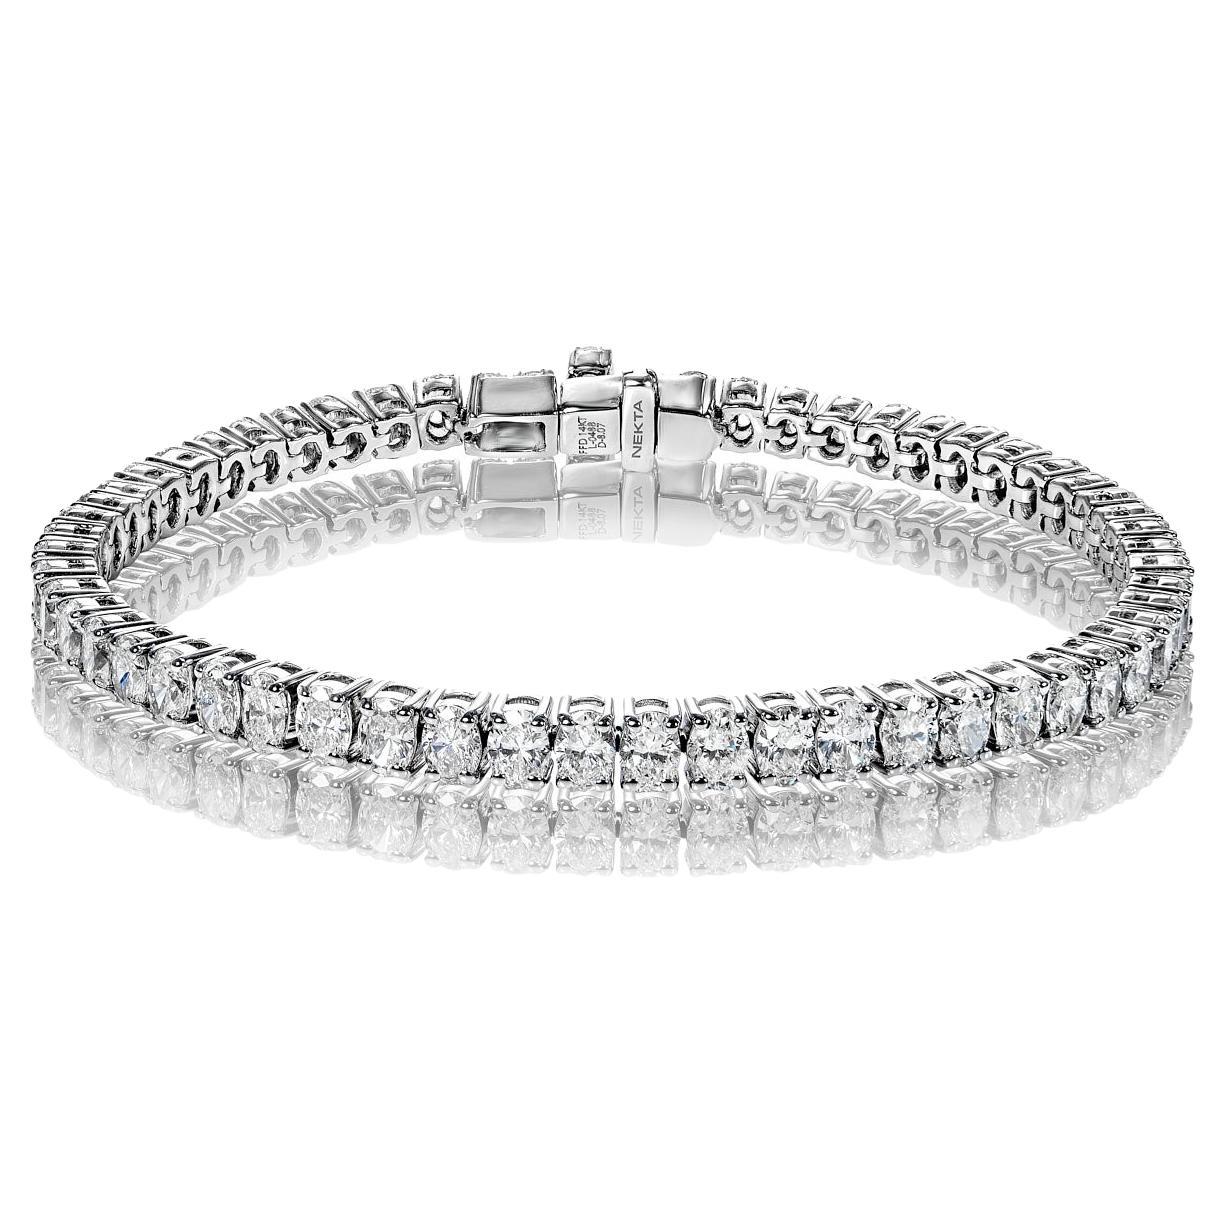 Bracelet tennis à une rangée de diamants taille ovale de 8 carats certifiés